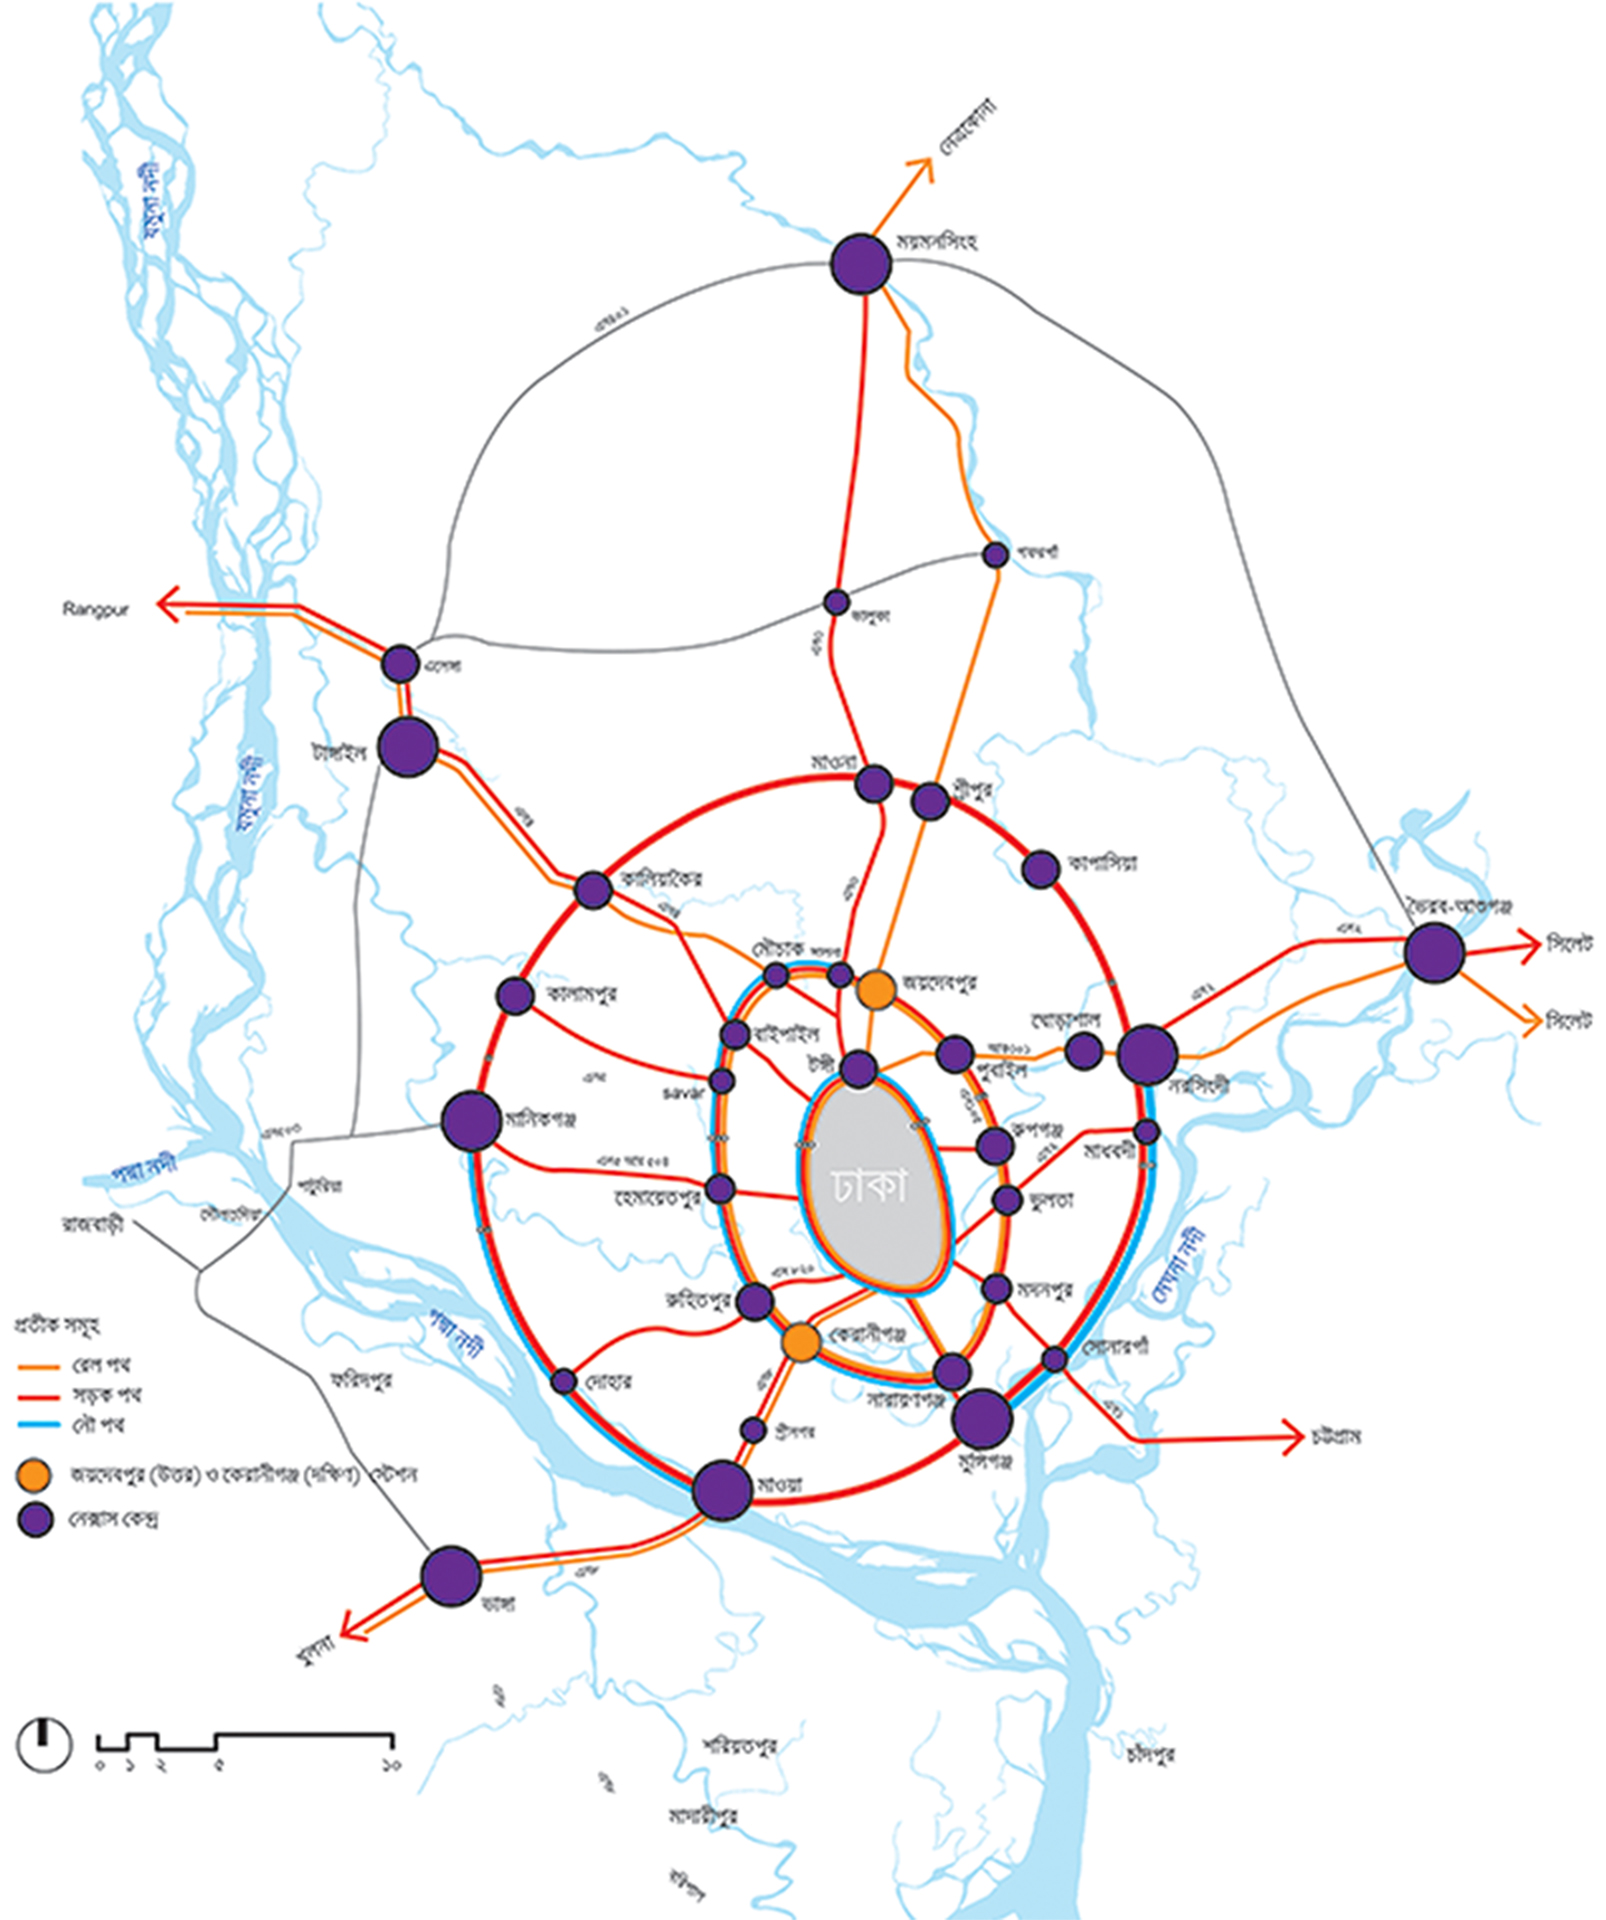 Dhaka Regional Plan 